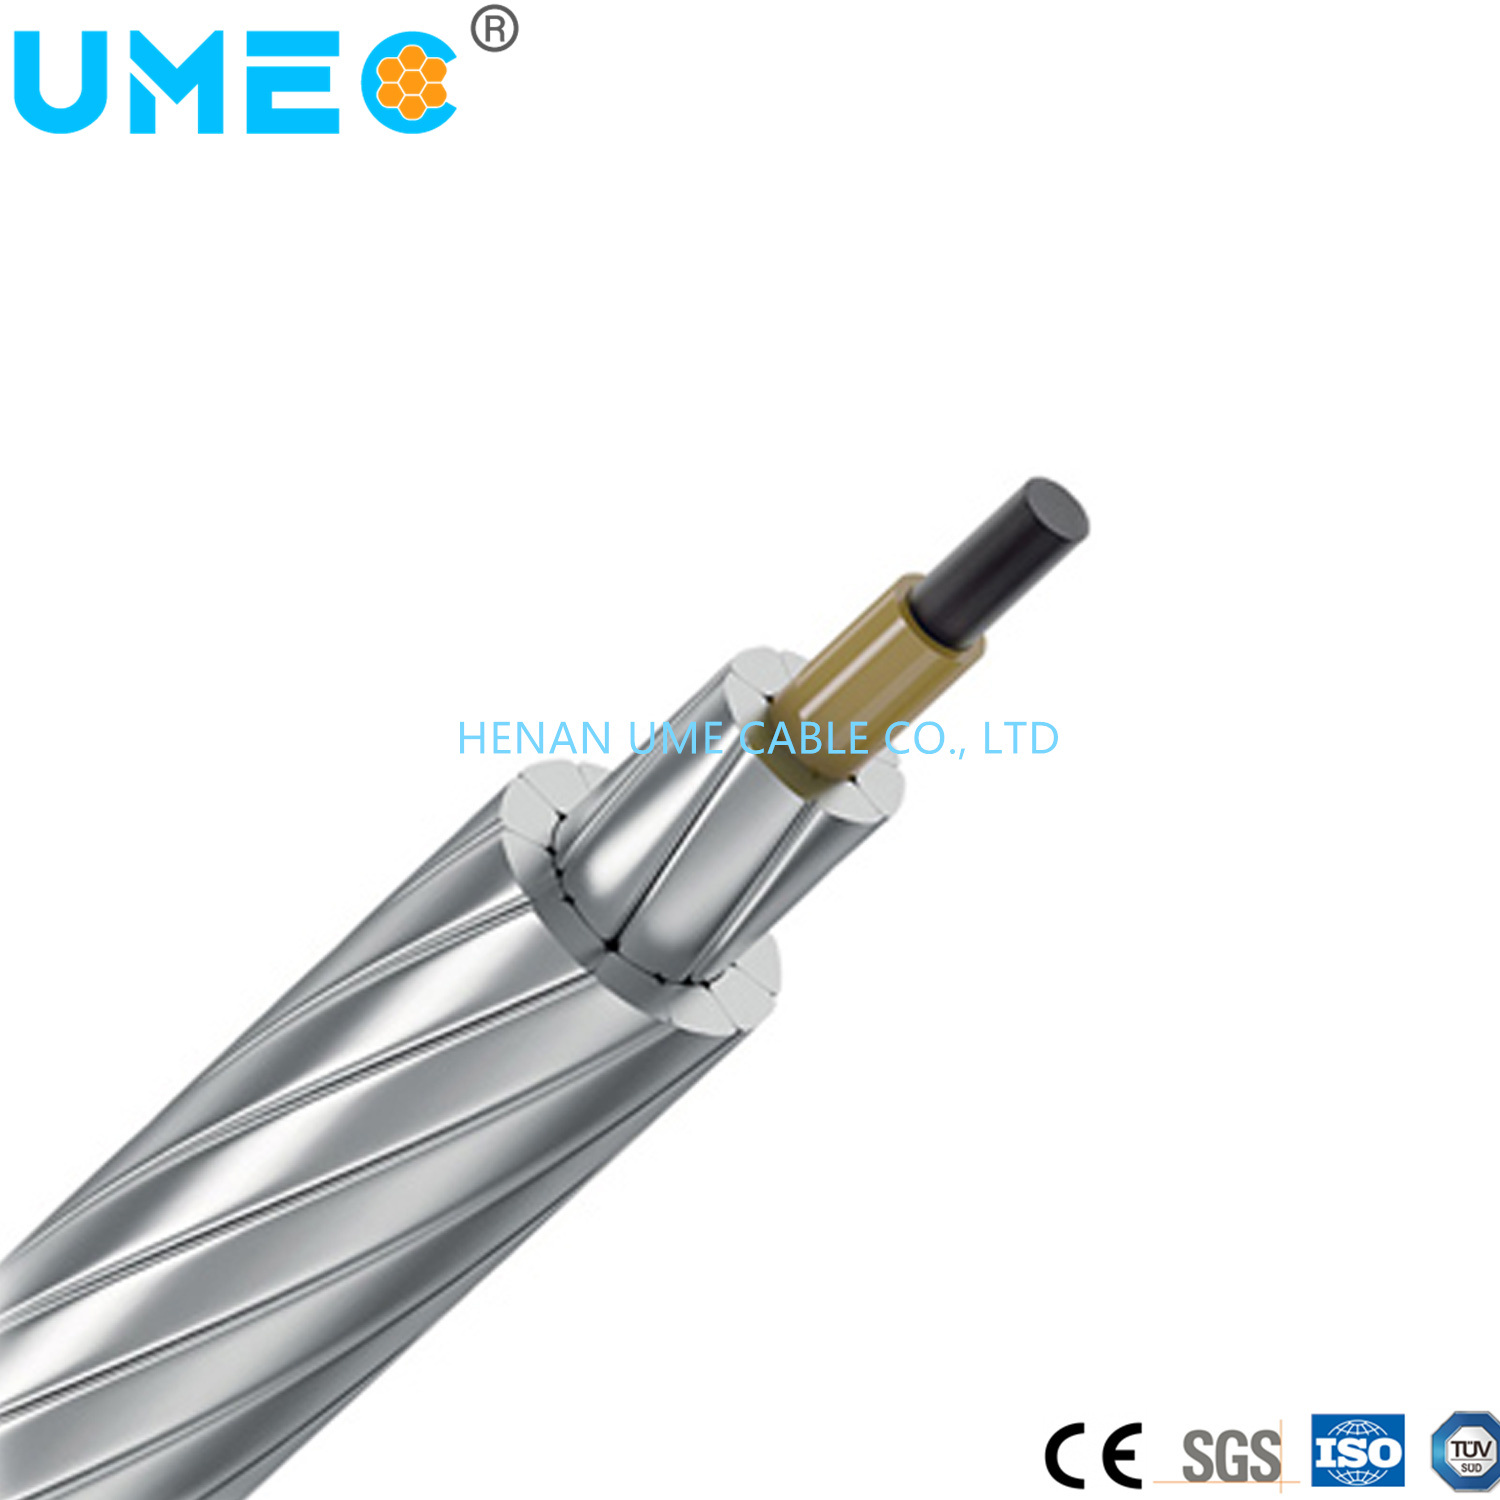 
                Accc núcleo compuesto de aluminio conductor conductor de aluminio Cable compuesto de fibra de carbono
            